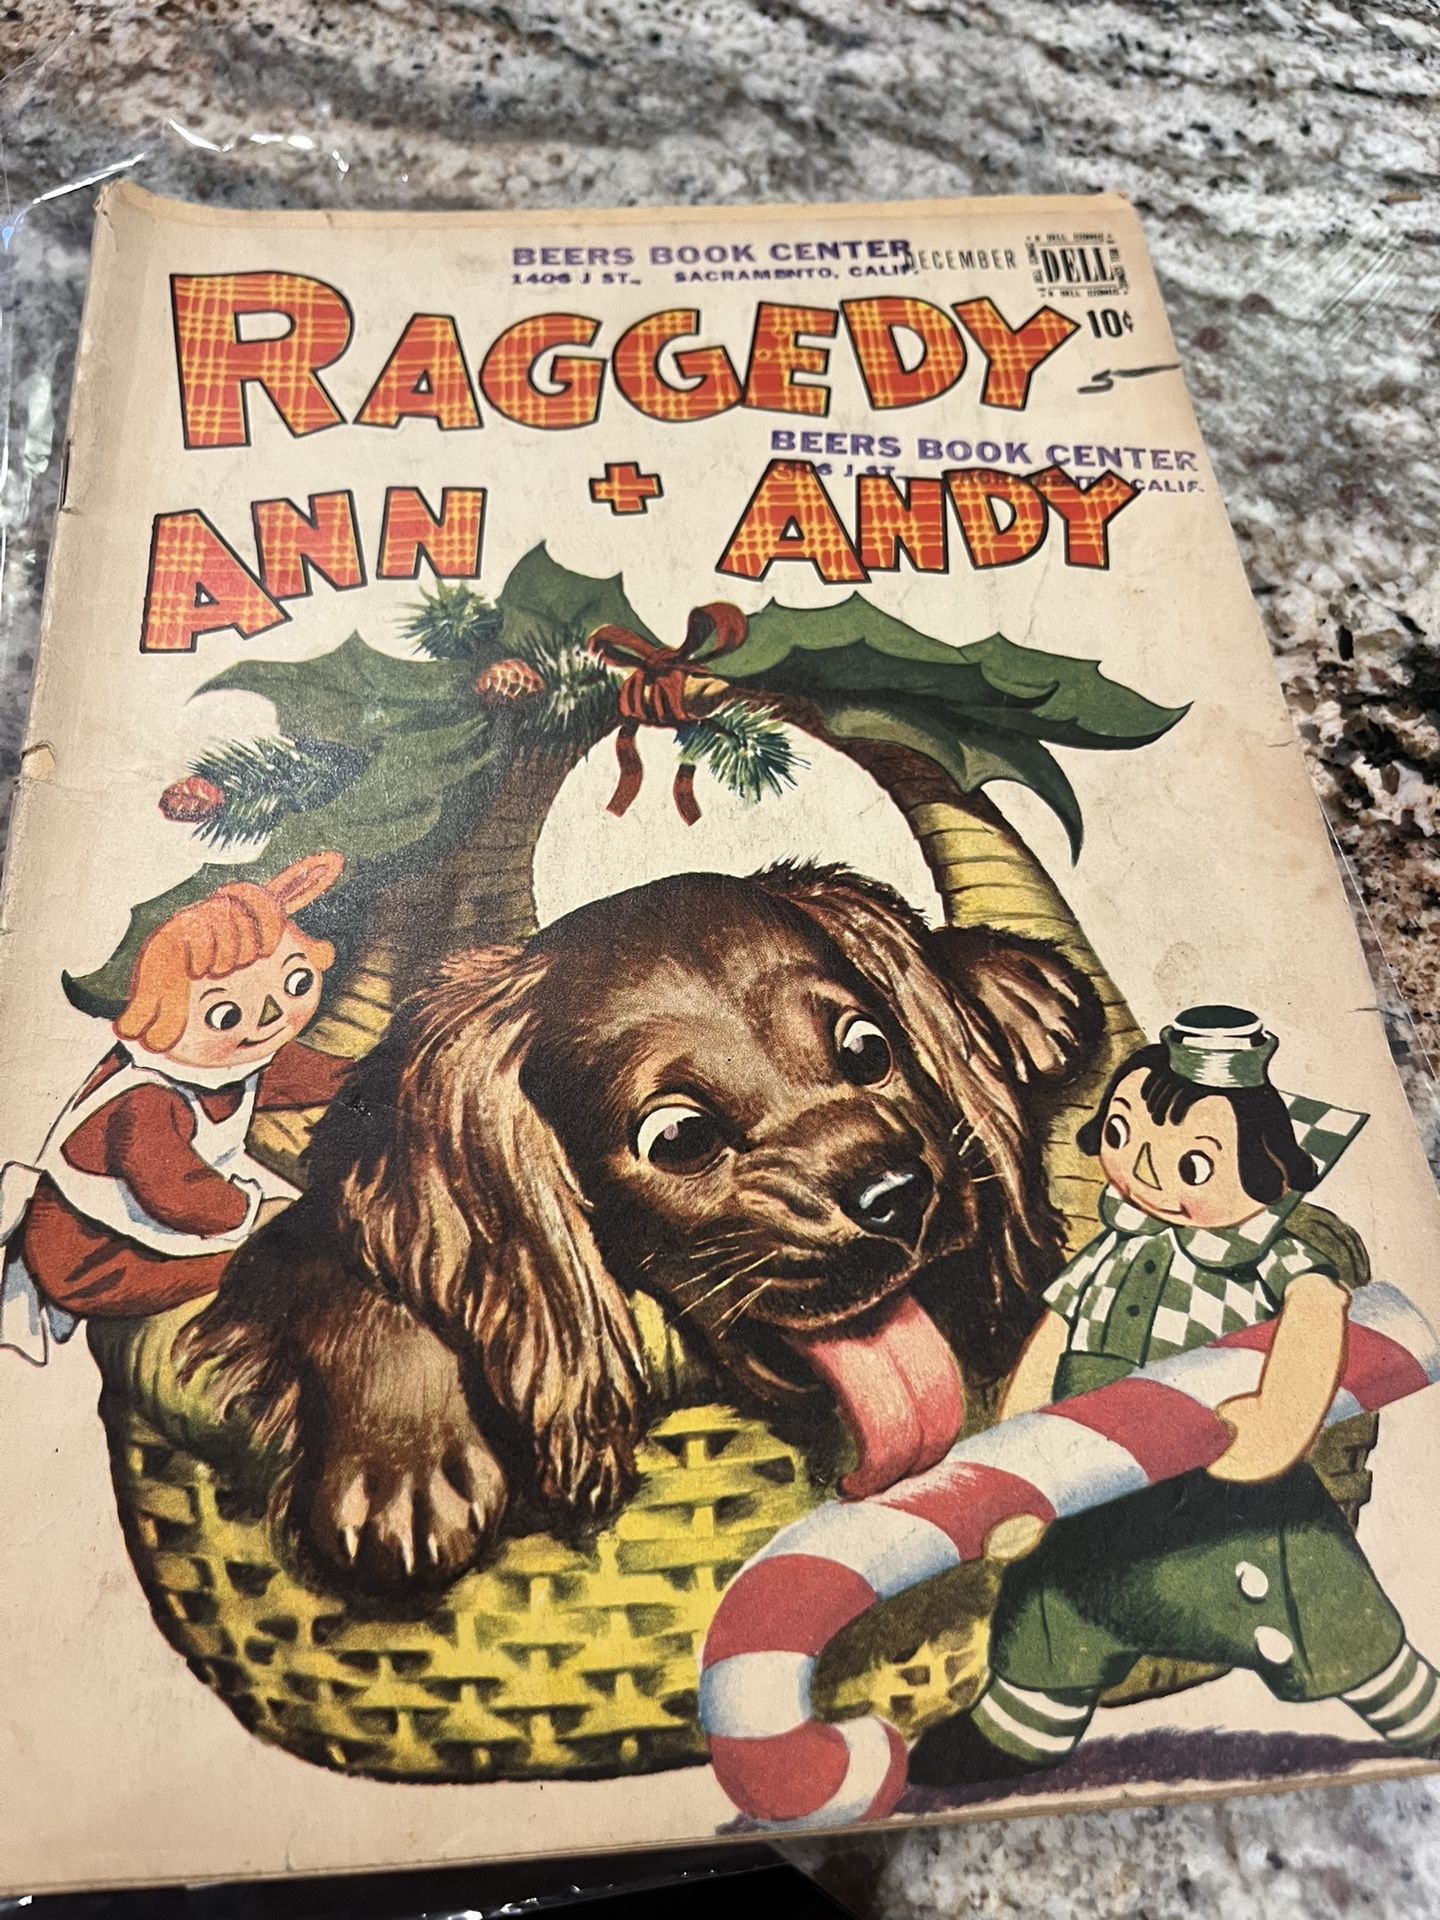 1947 RAGGEDY ANN + ANDY CARTOON BY DELL